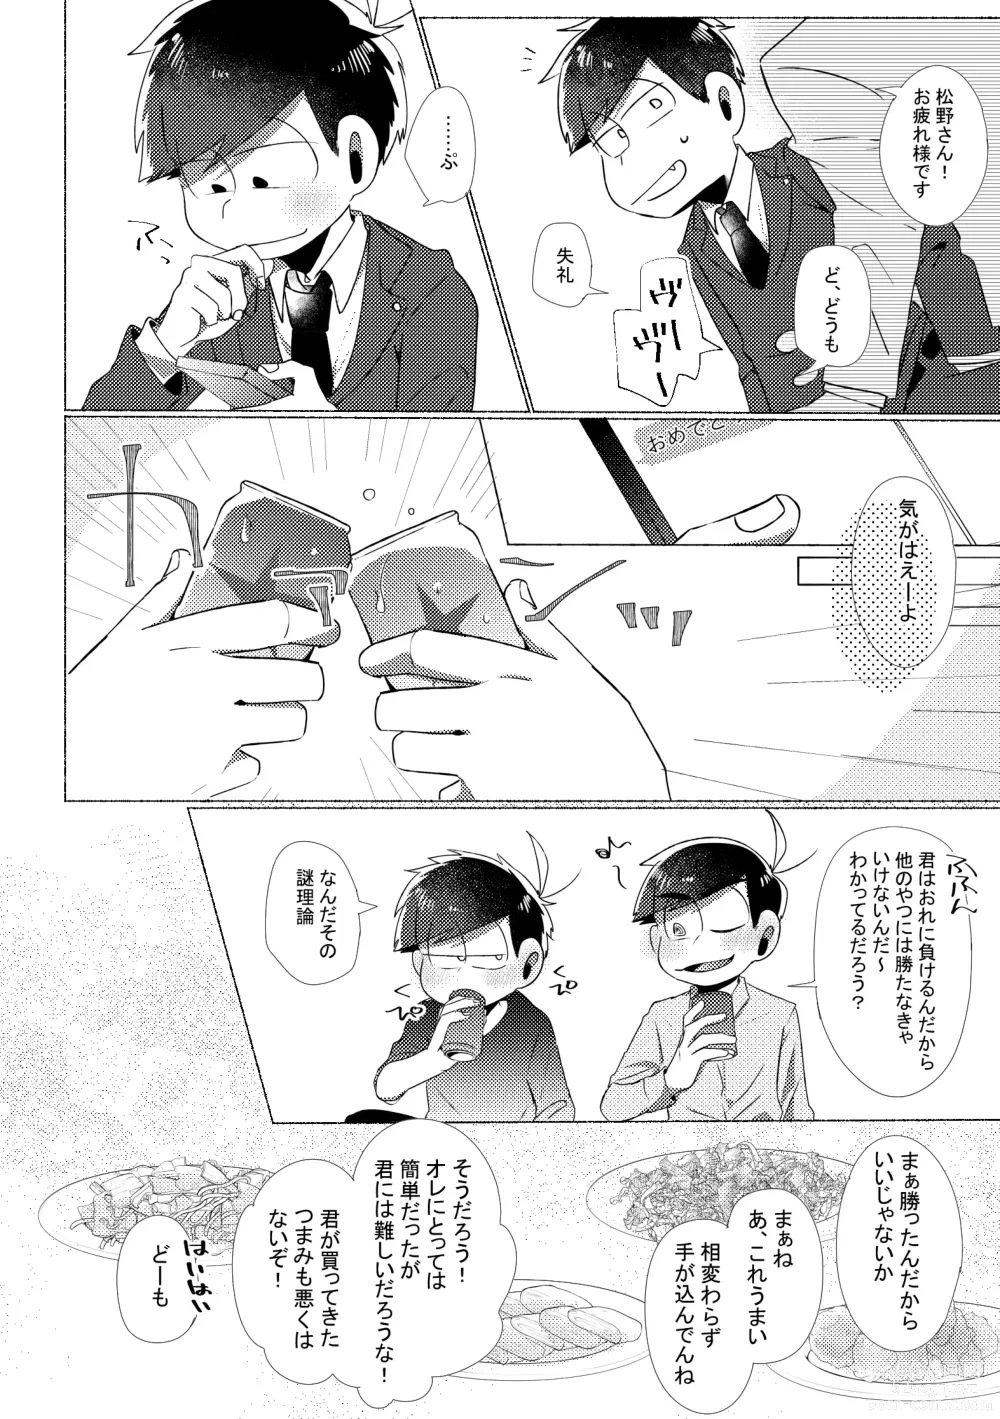 Page 9 of doujinshi Aperitif